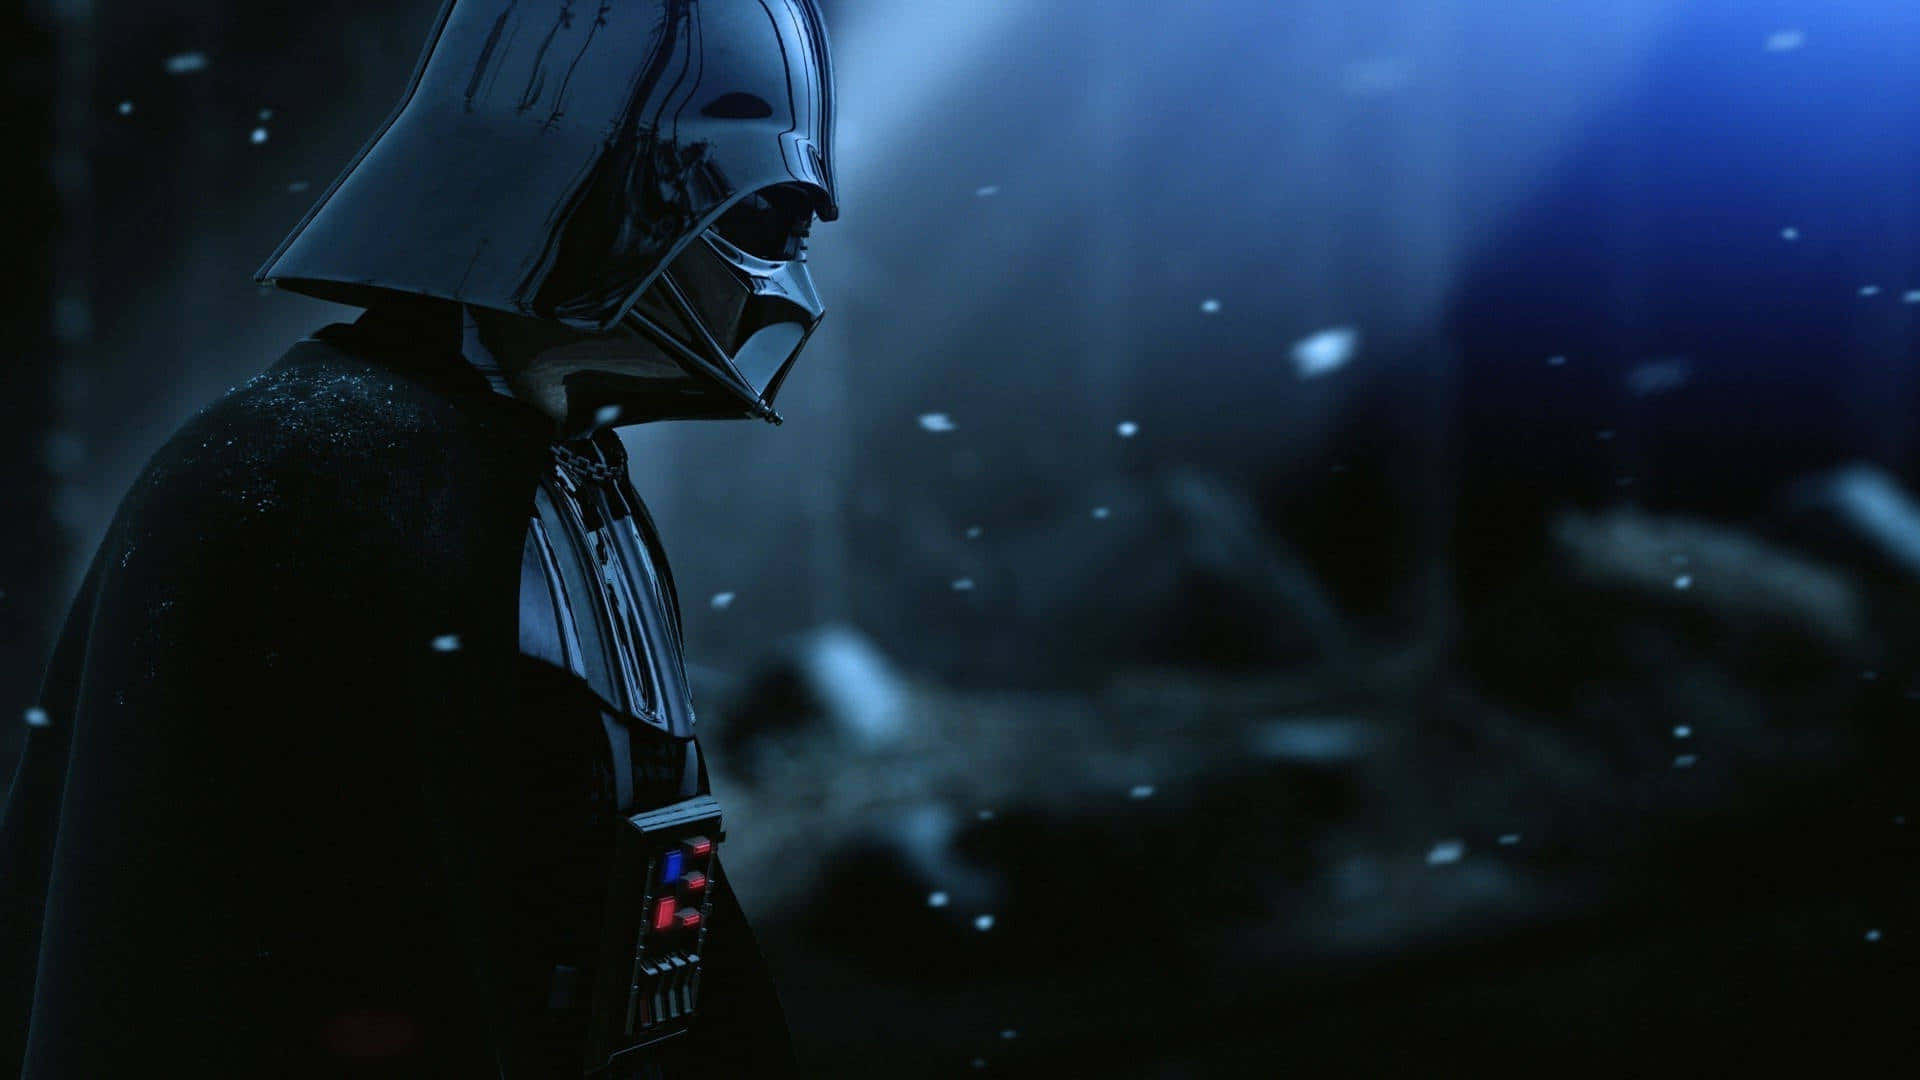 'derdunkle Lord Der Sith, Darth Vader.'